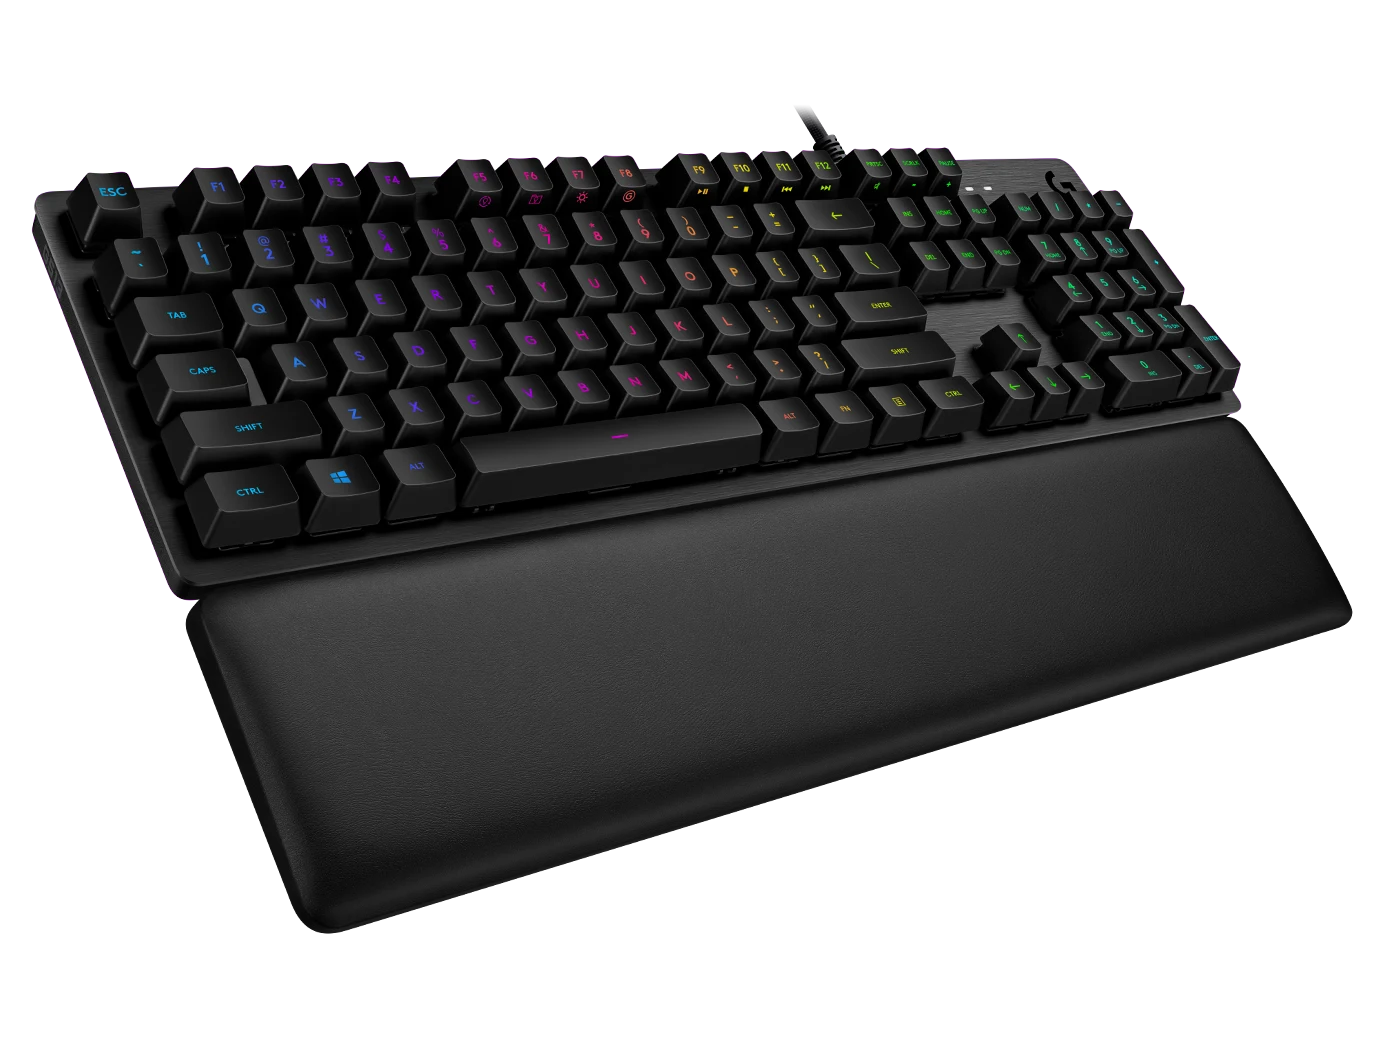 G513 CARBON LIGHTSYNC RGB Mechanical Gaming Keyboard, GX Brown (Tactile)